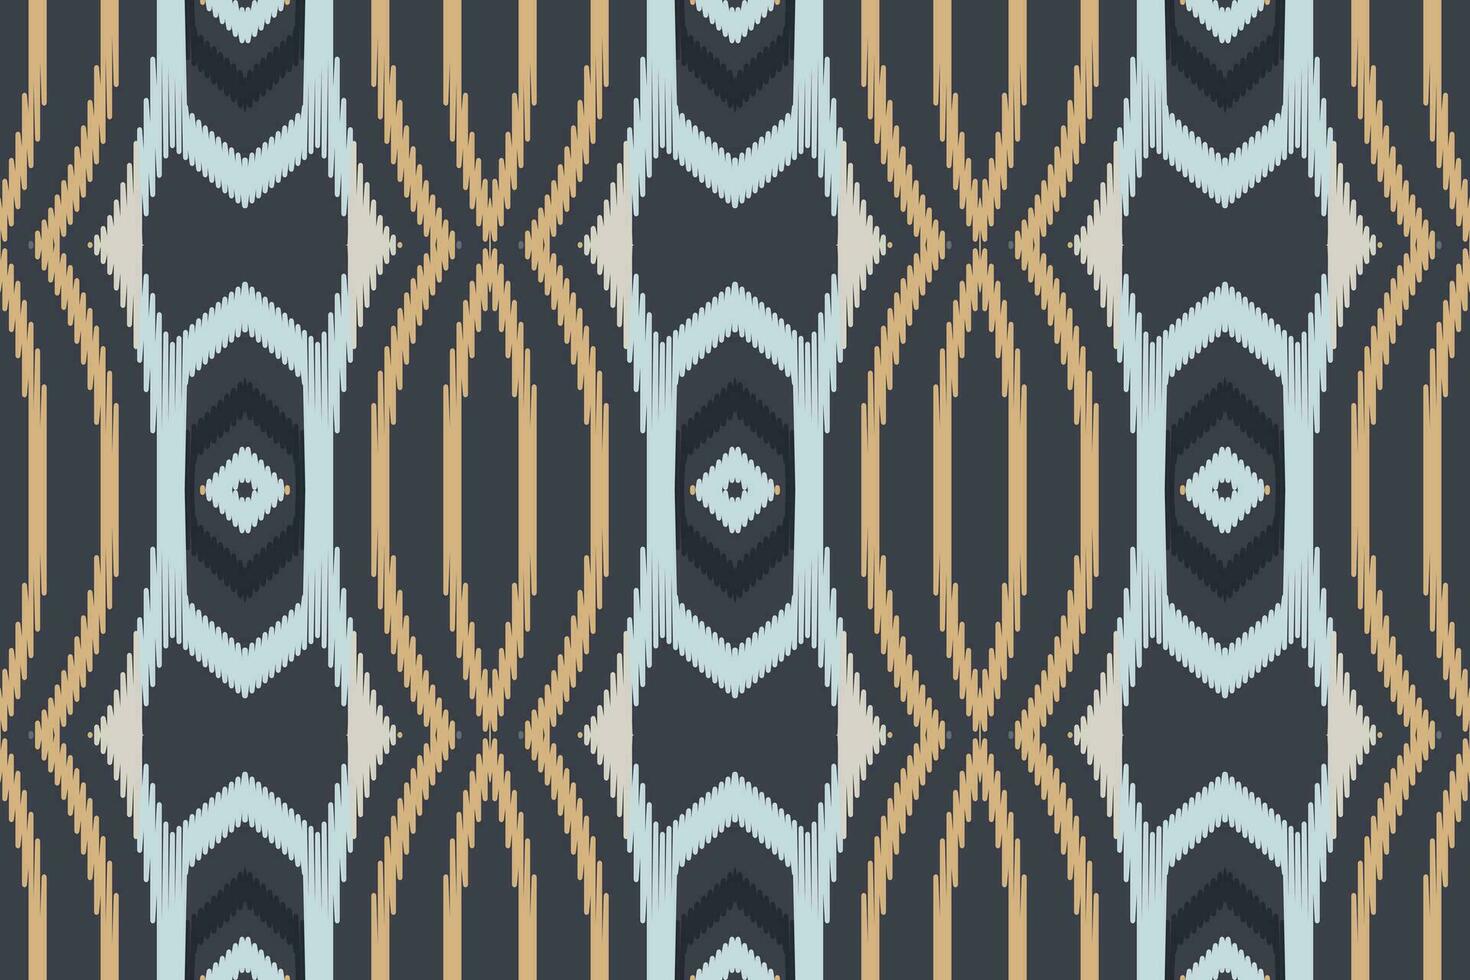 ikat damast borduurwerk achtergrond. ikat patronen meetkundig etnisch oosters patroon traditioneel.azteken stijl abstract vector illustratie.ontwerp voor textuur, stof, kleding, verpakking, sarong.